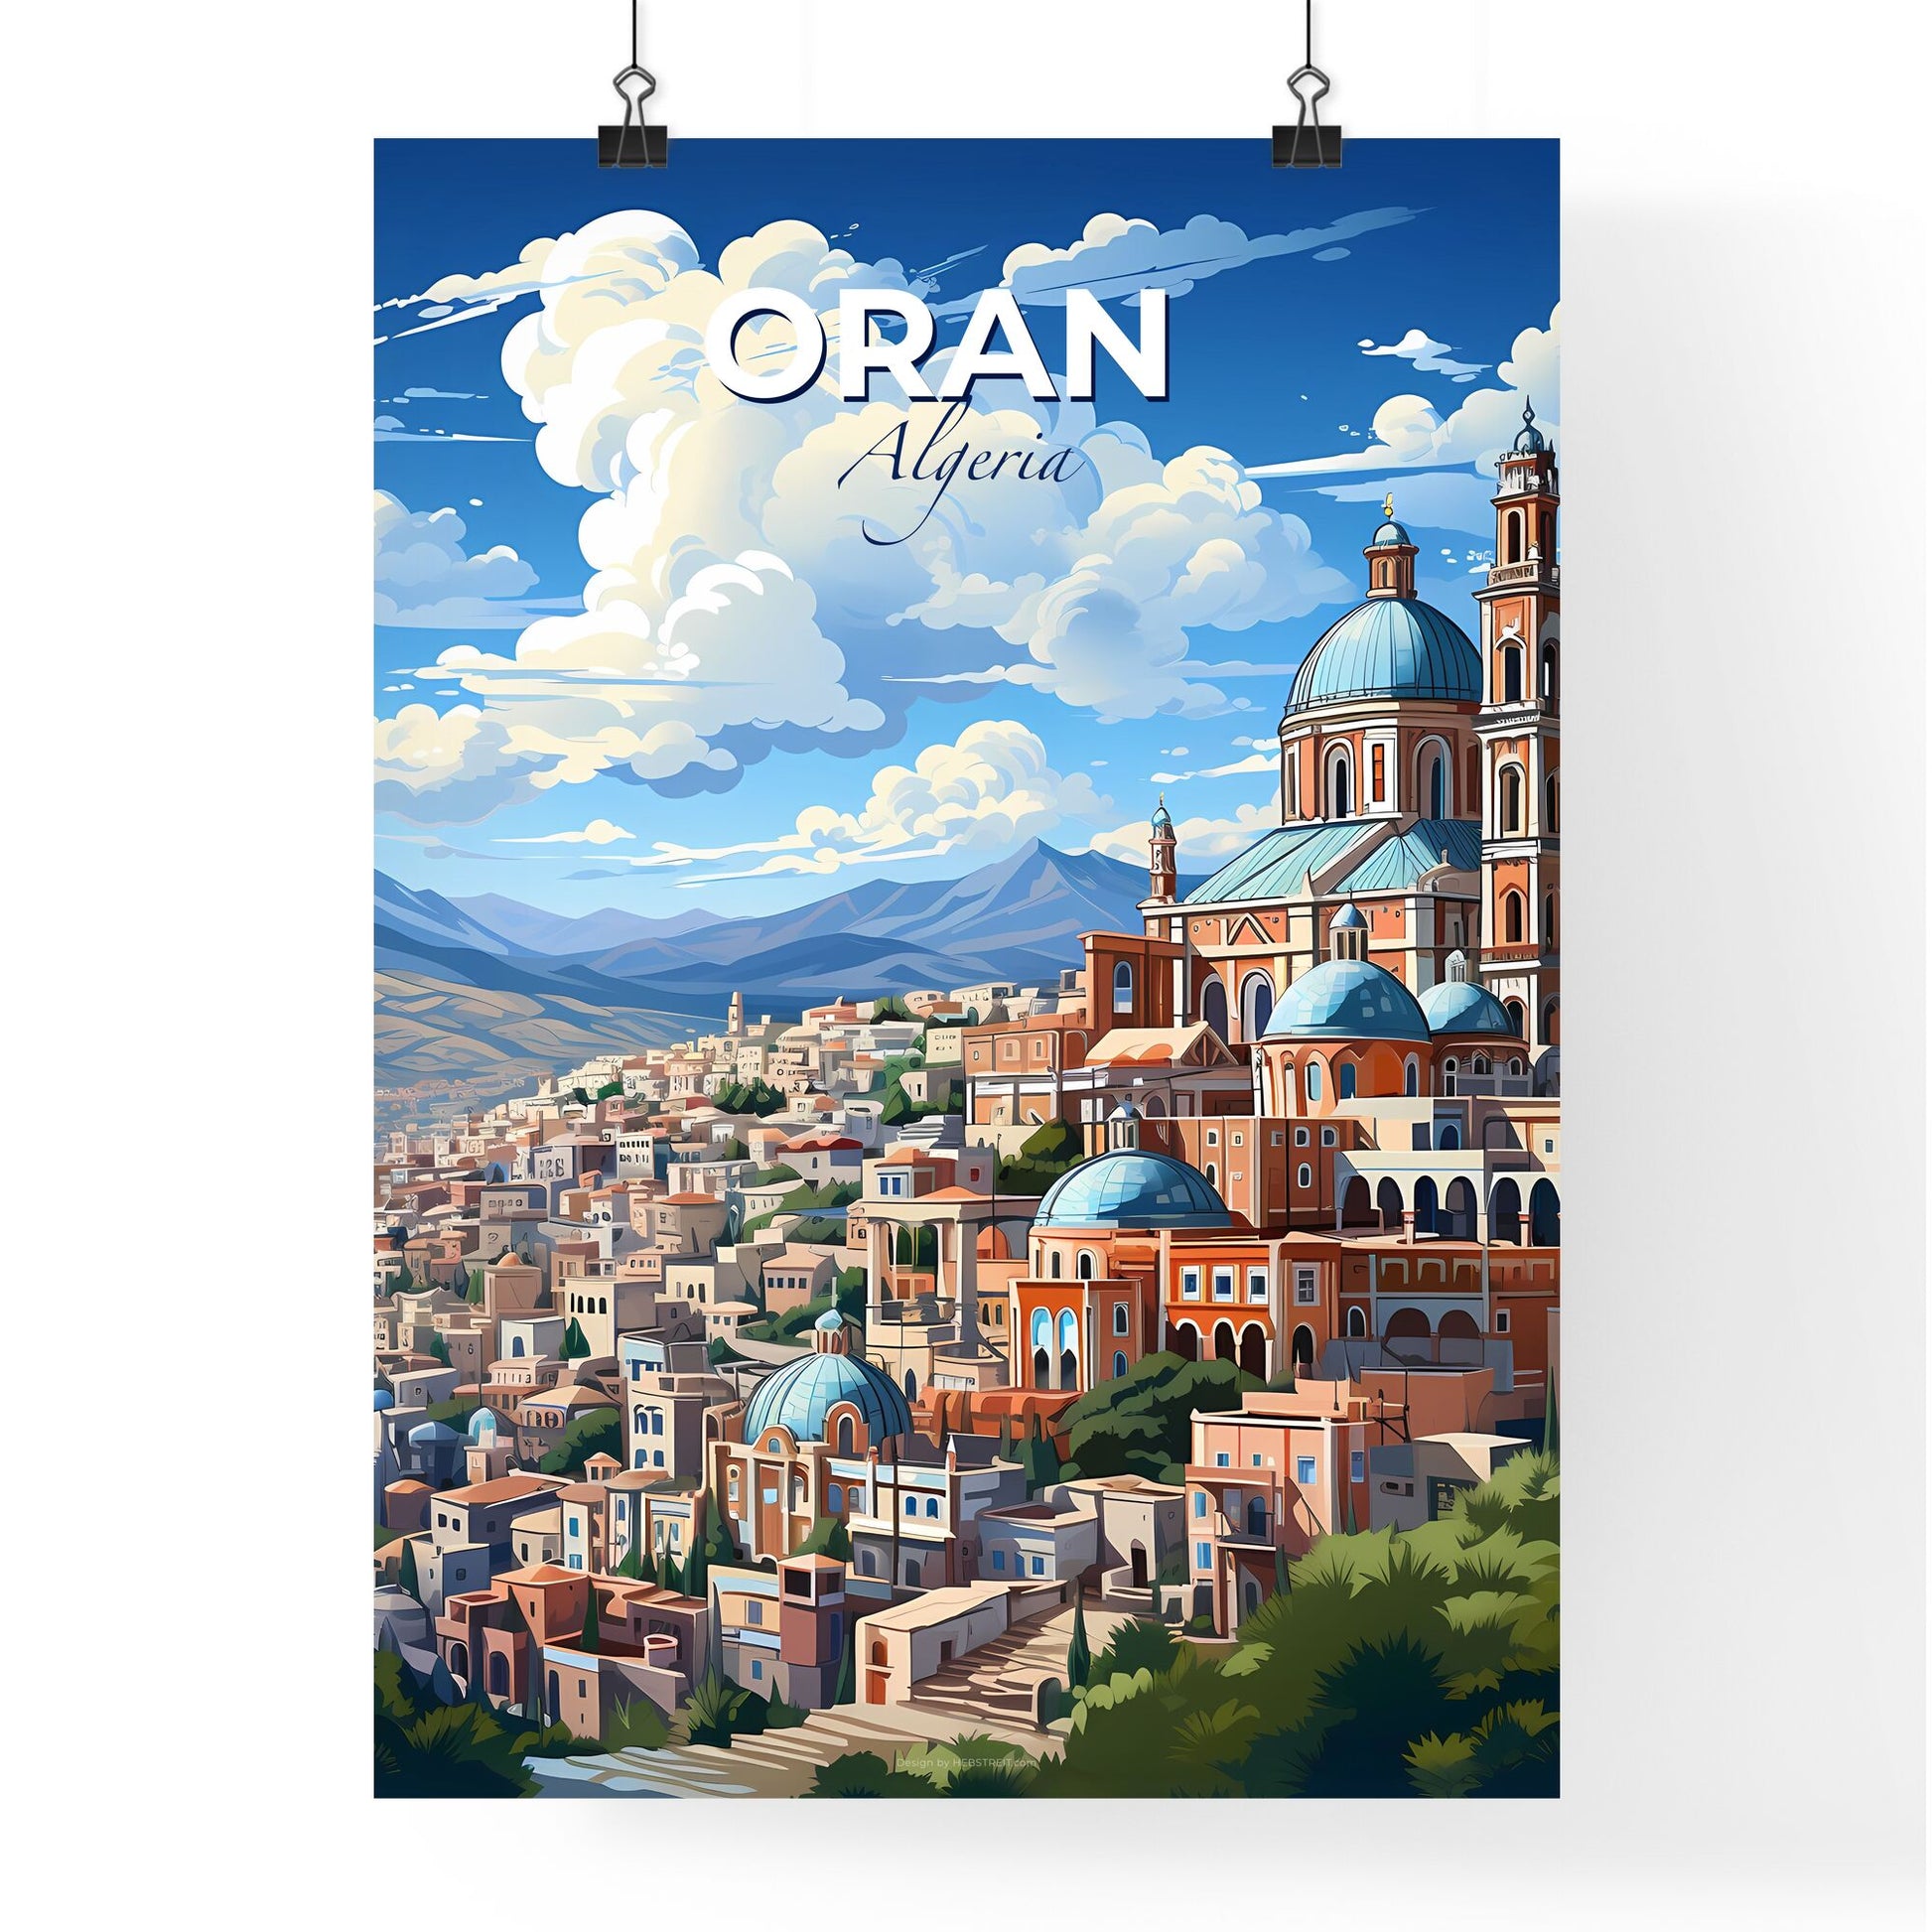 Algeria City Skyline Painting, Oran Dome Roof, Blue Sky, Art Deco Building, Cityscape, Travel, Tourism, Destination, Artwork, Canvas Default Title